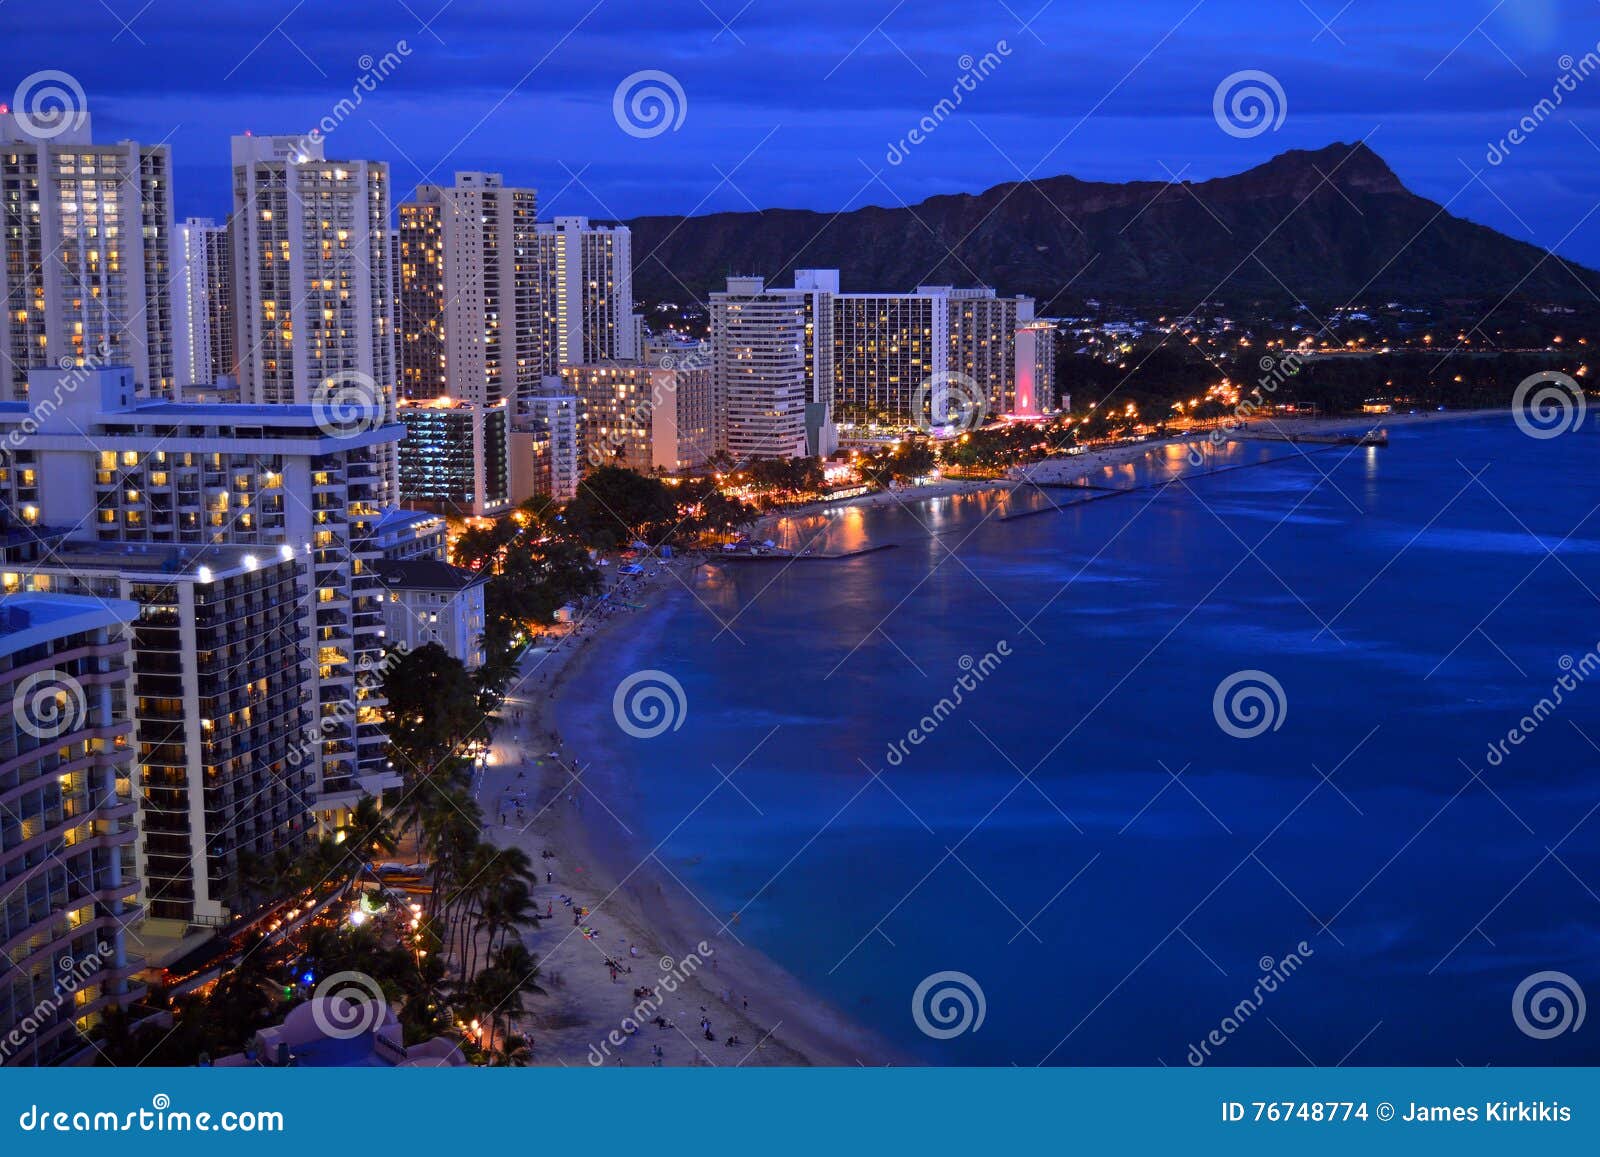 Vista aerea di crepuscolo di Waikiki. Le luci dell'hotel di Waikiki splendono al crepuscolo